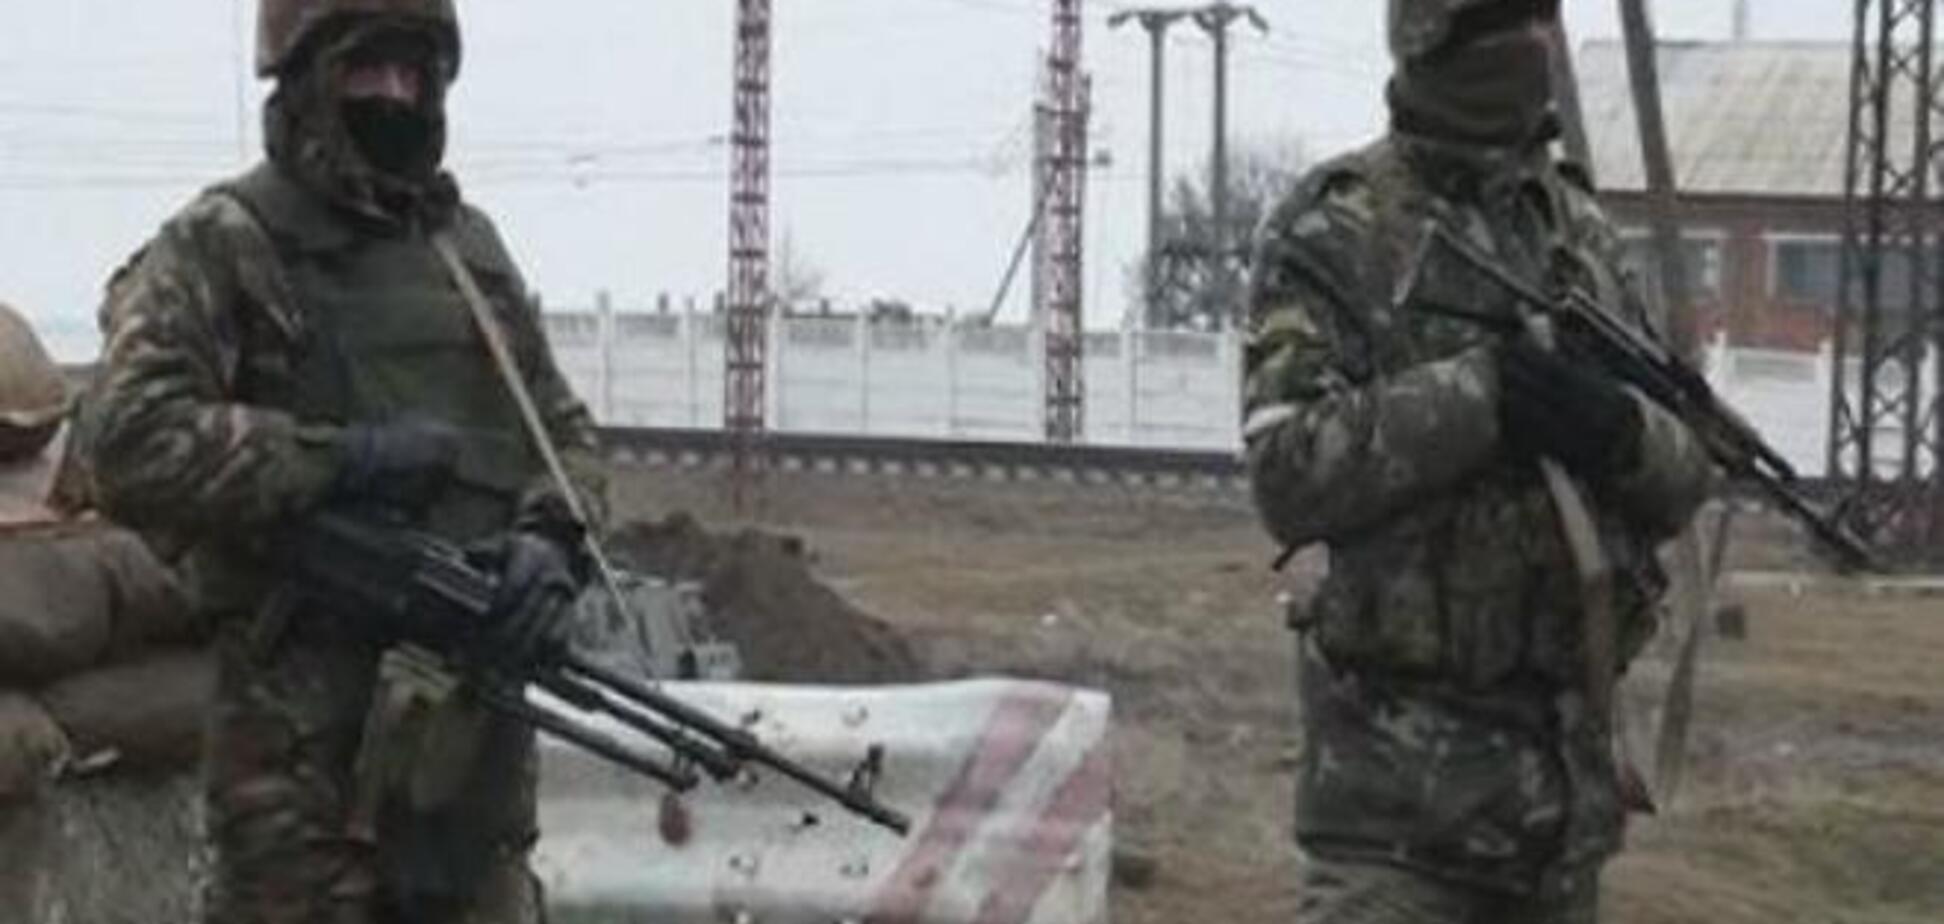 Сепаратисты, блокирующие воинские части на Донетчине, устали и халтурят - источник